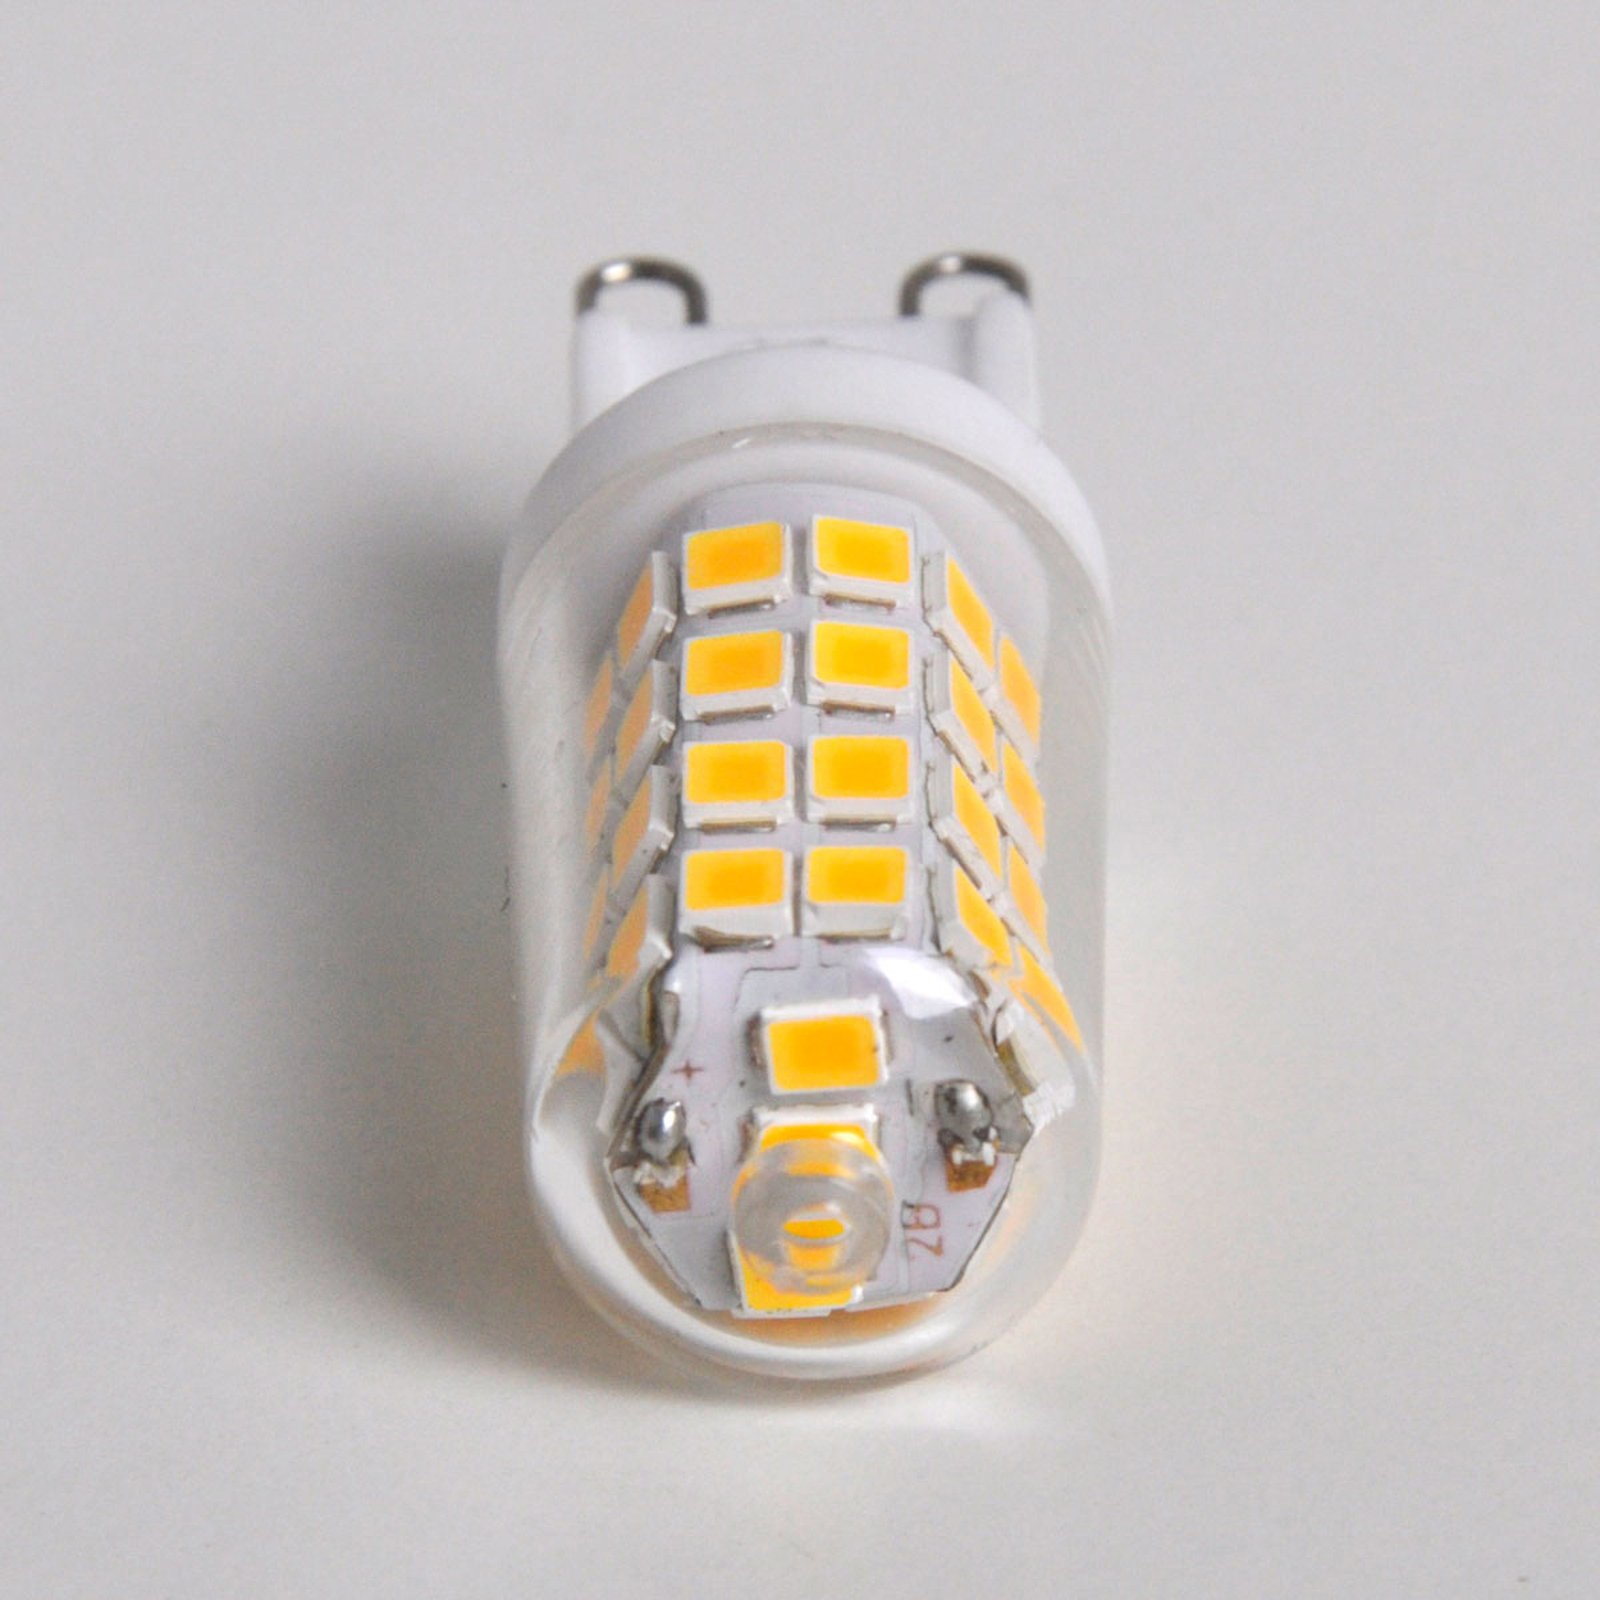 Bi-pin LED bulb G9 3 W, warm white, 330 lm 20-pack